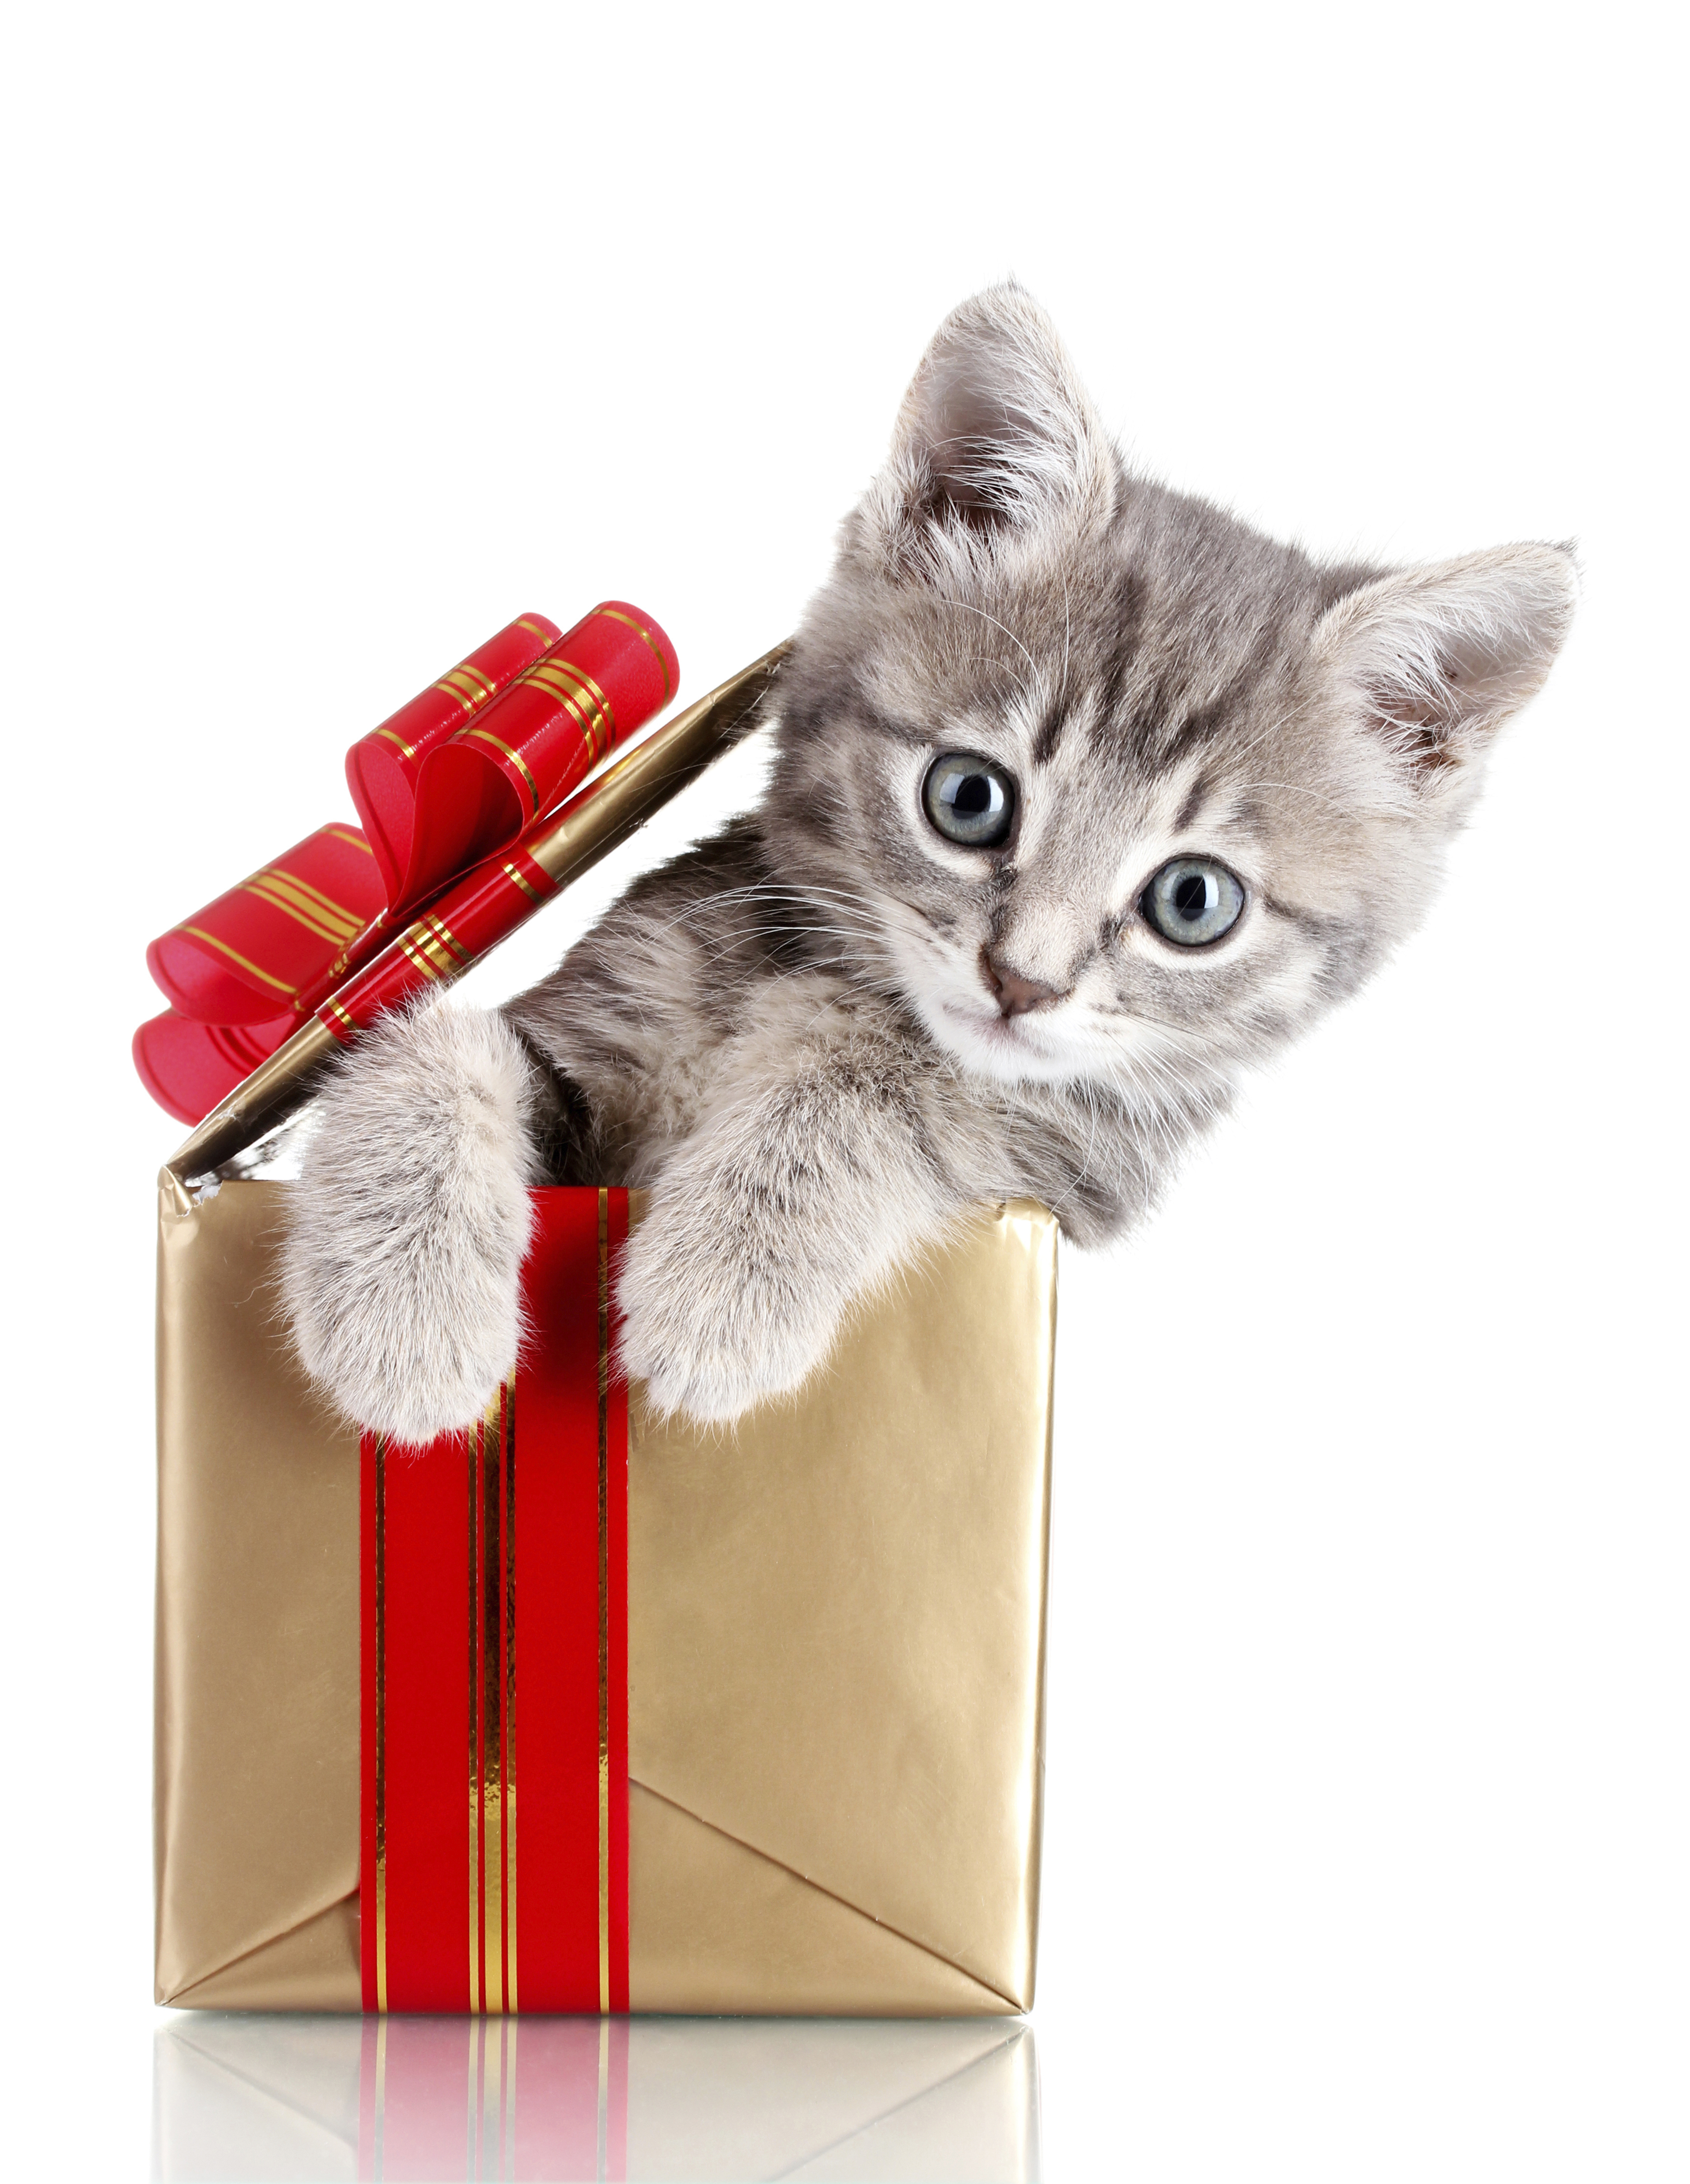 котят коты Новый год коробке Взгляд животное белом фоне 3390x4380 для мобил...